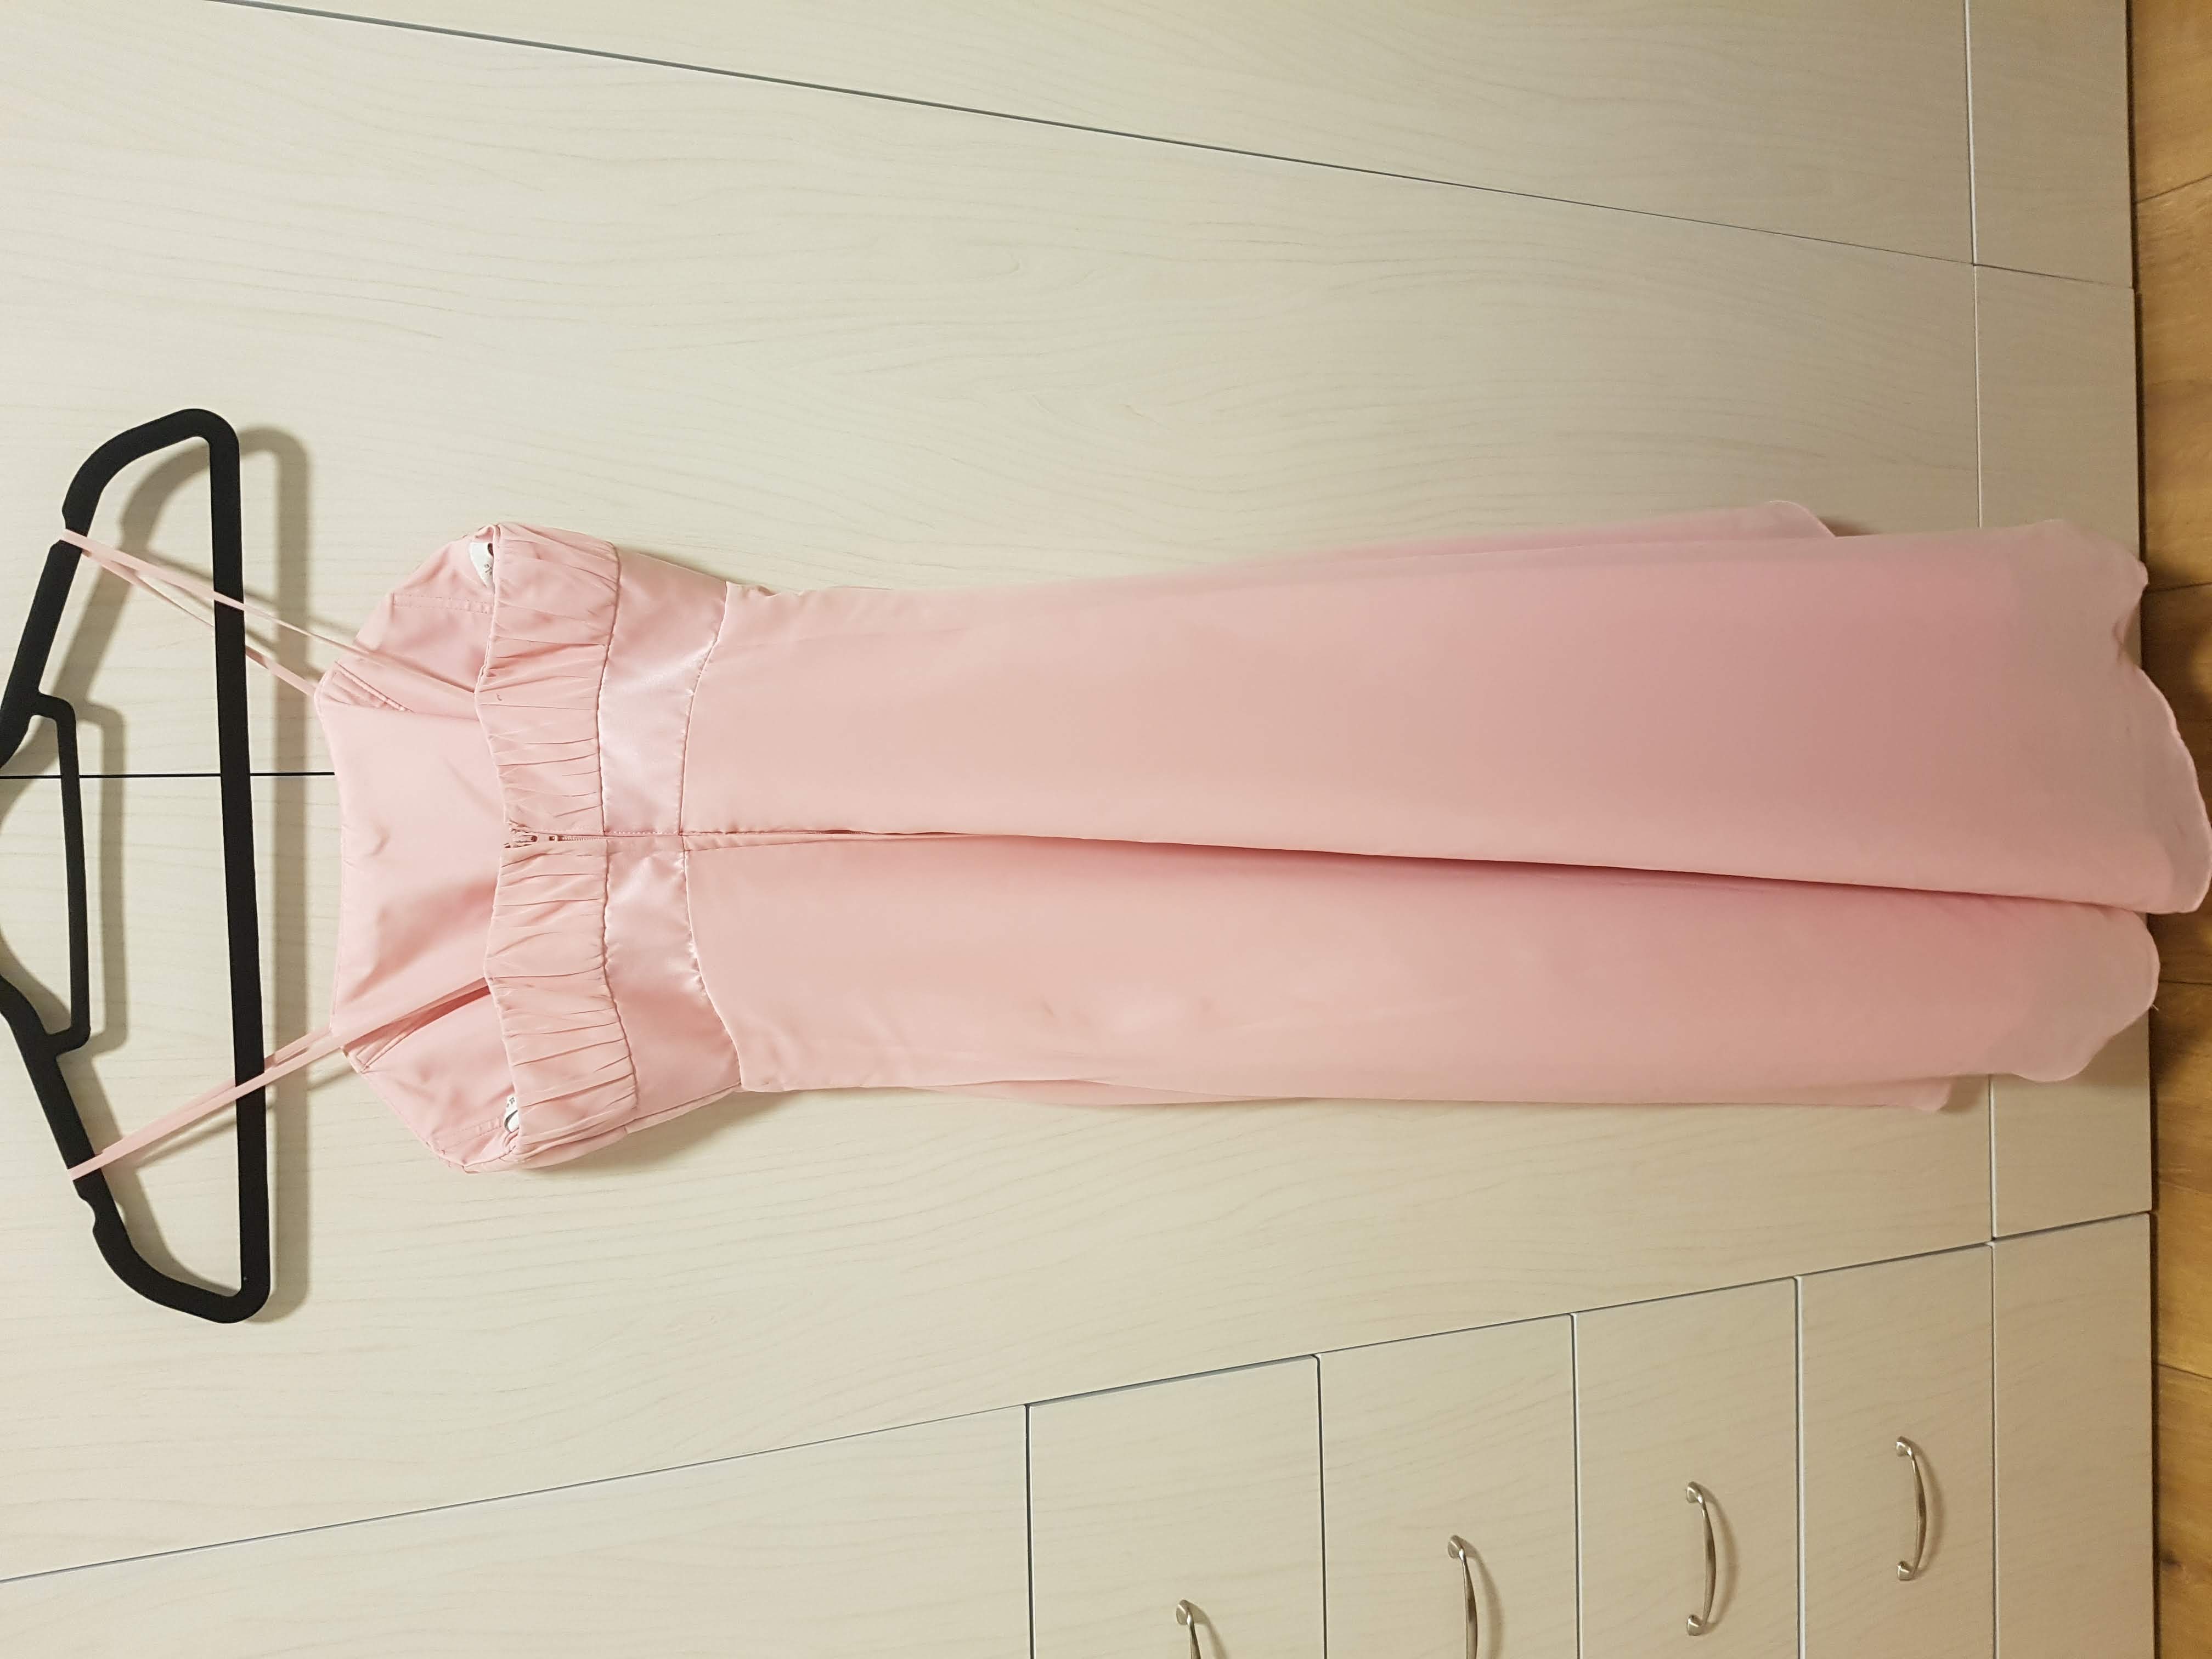 תמונה 2 ,שמלת מעצב לשושבינה לאירוע ערב למכירה באזור יד-שניה לנשים  בגדי נשים